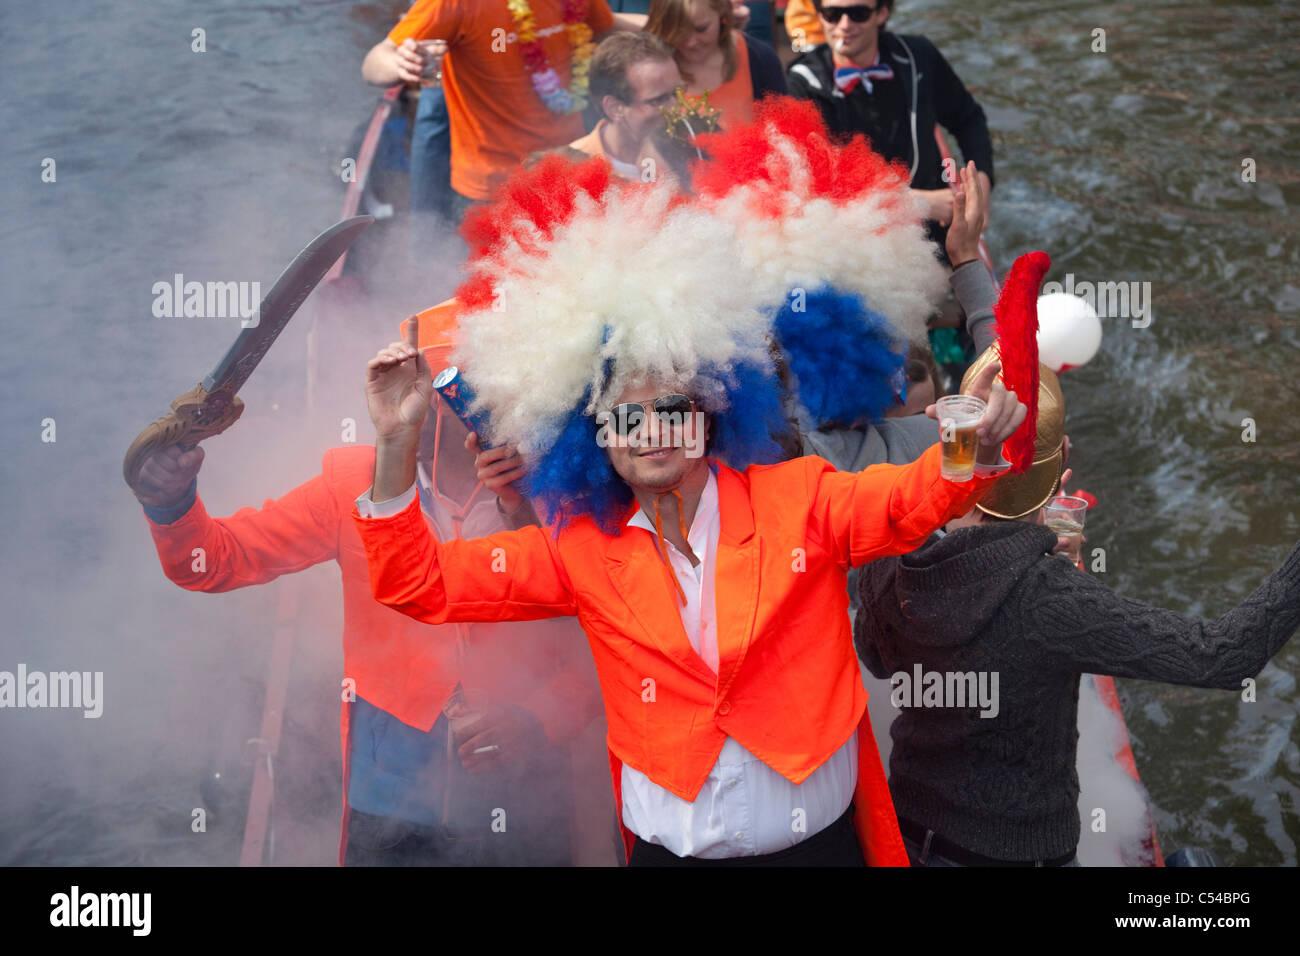 Les Pays-Bas, Amsterdam. Queens Day est une nuit et jour carnival comme événement le 30 avril de chaque année. Défilé du canal. Banque D'Images